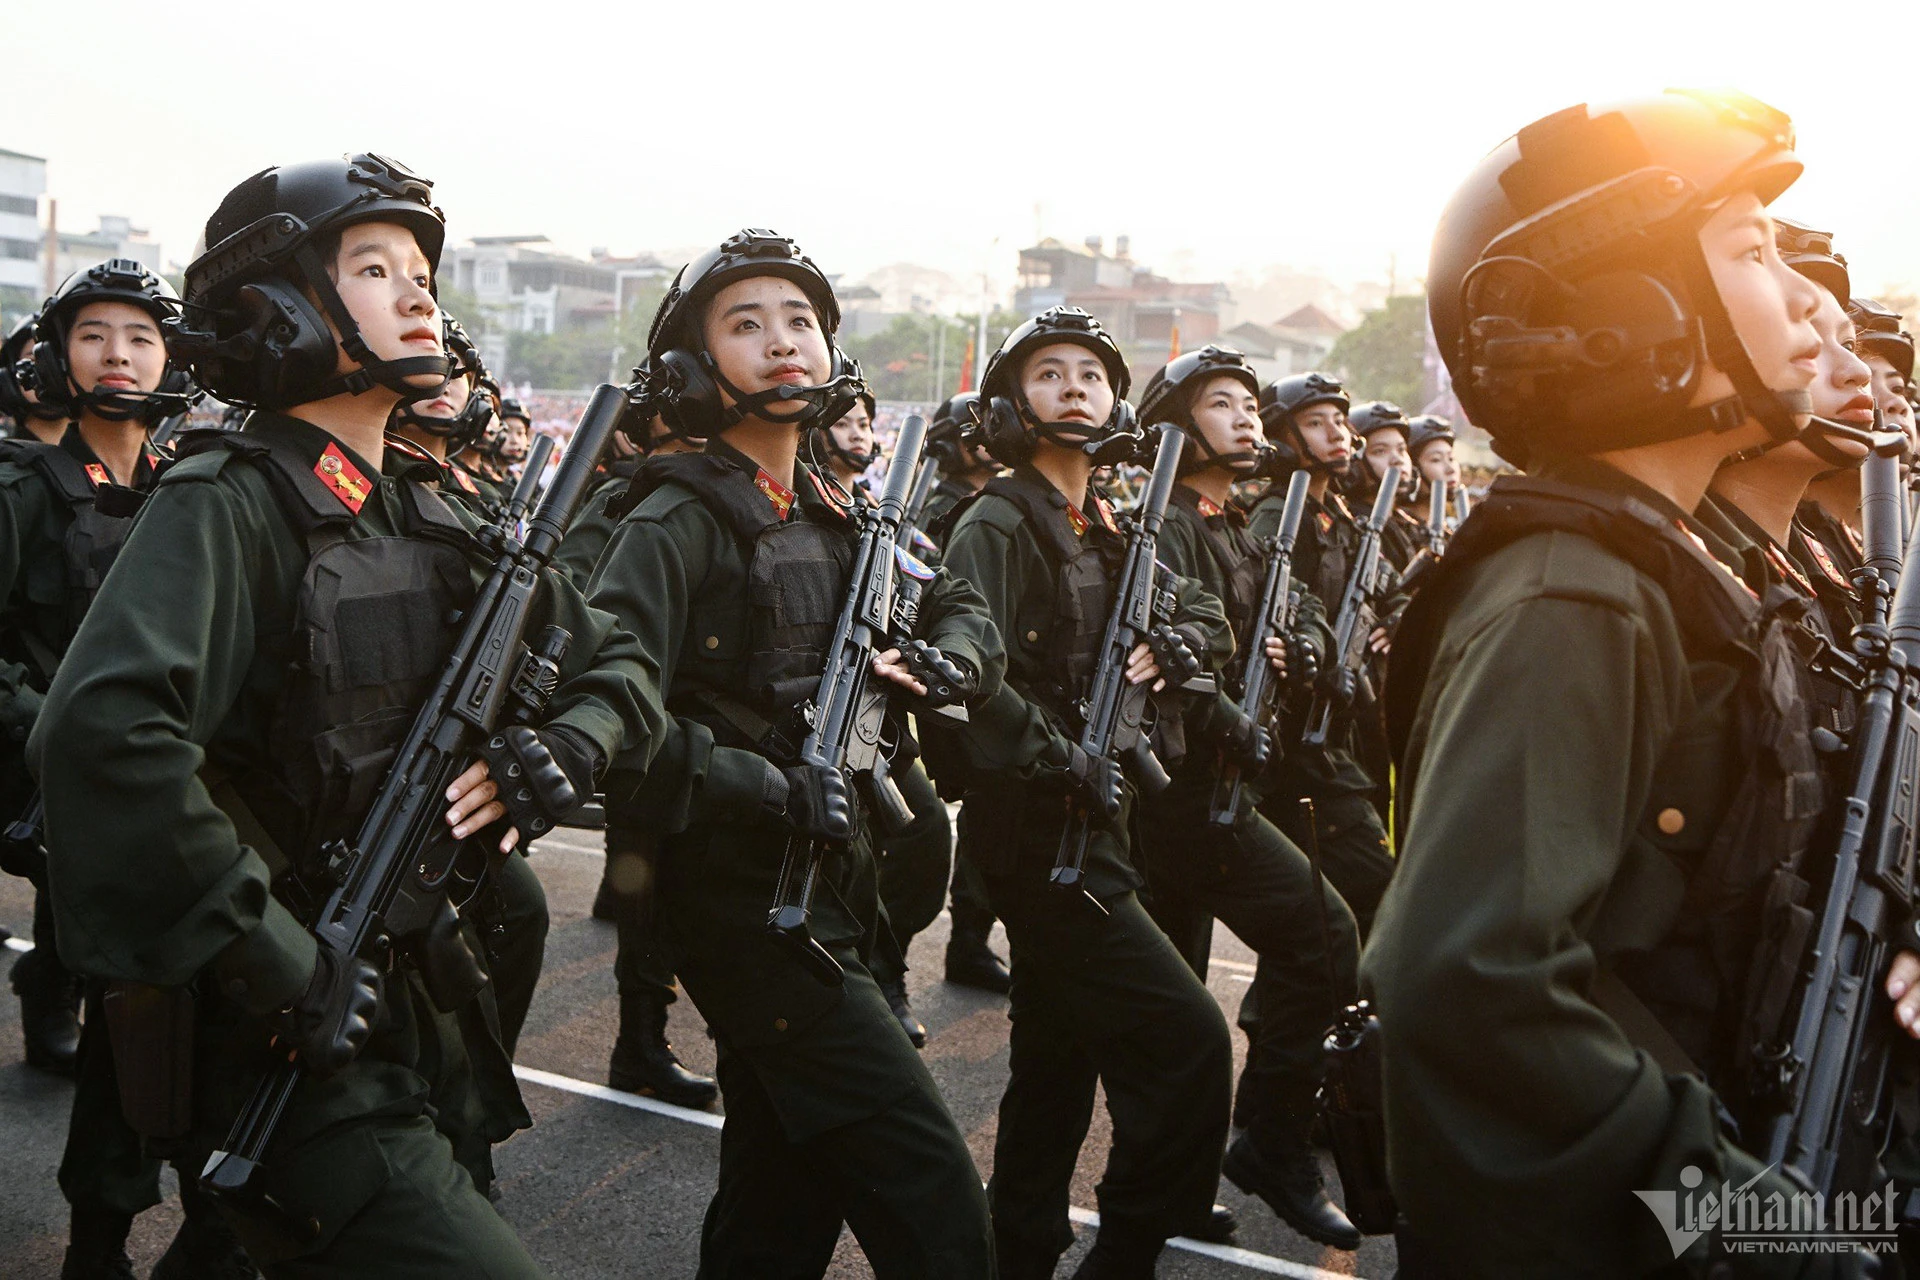 Quân đội và Công an hợp luyện diễu binh trên đường phố Điện Biên